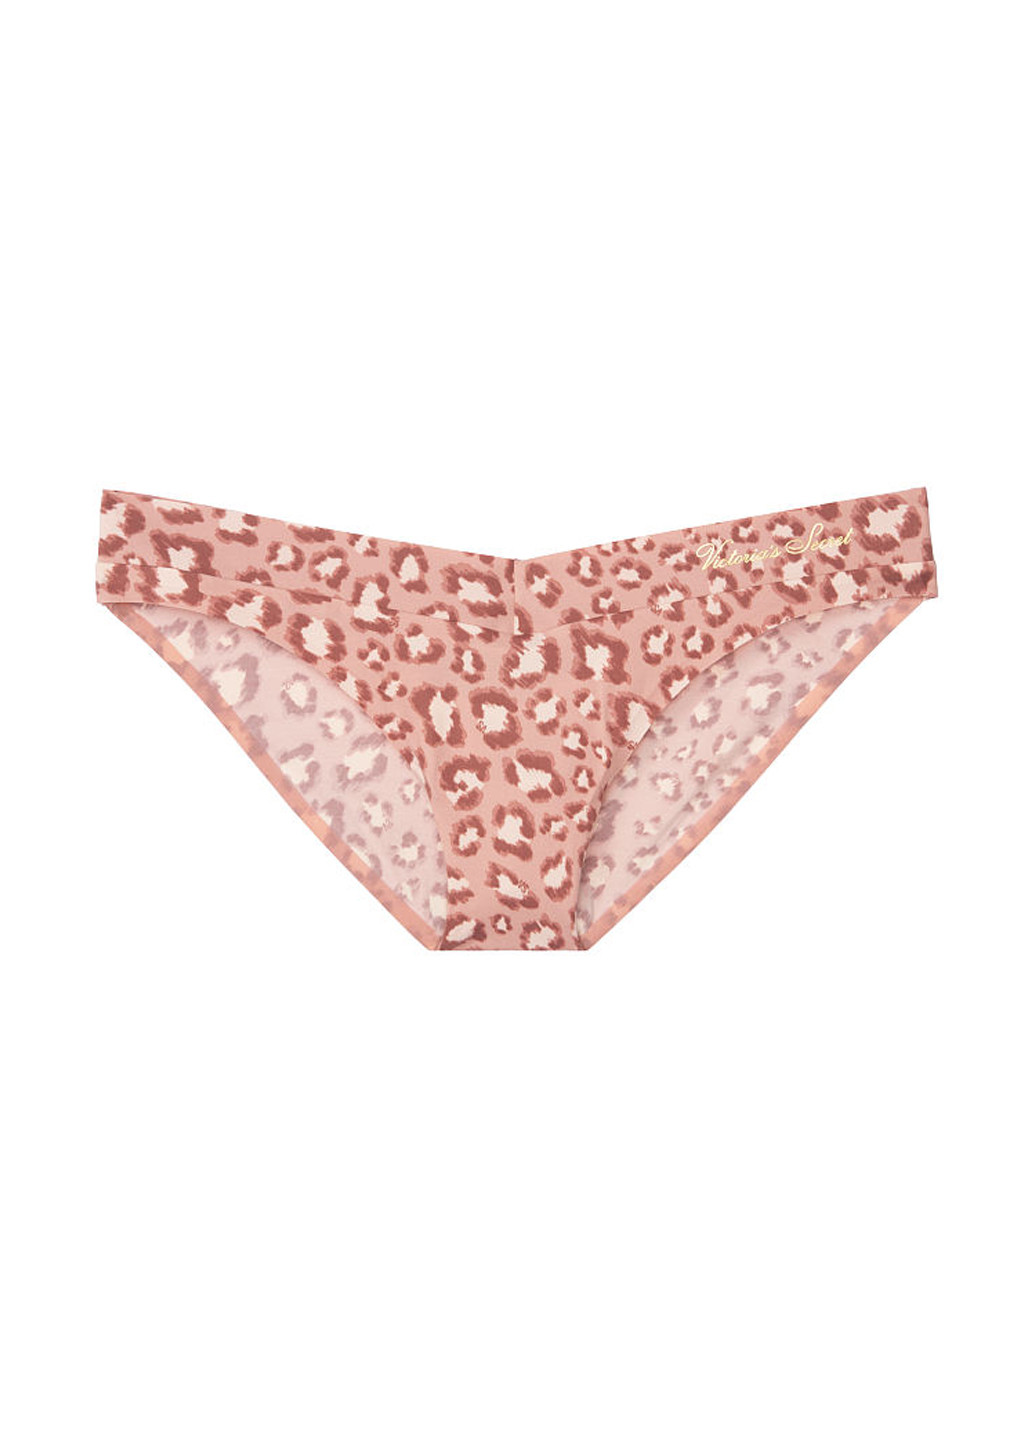 Трусы Victoria's Secret бикини розово-коричневые повседневные полиамид, микрофибра